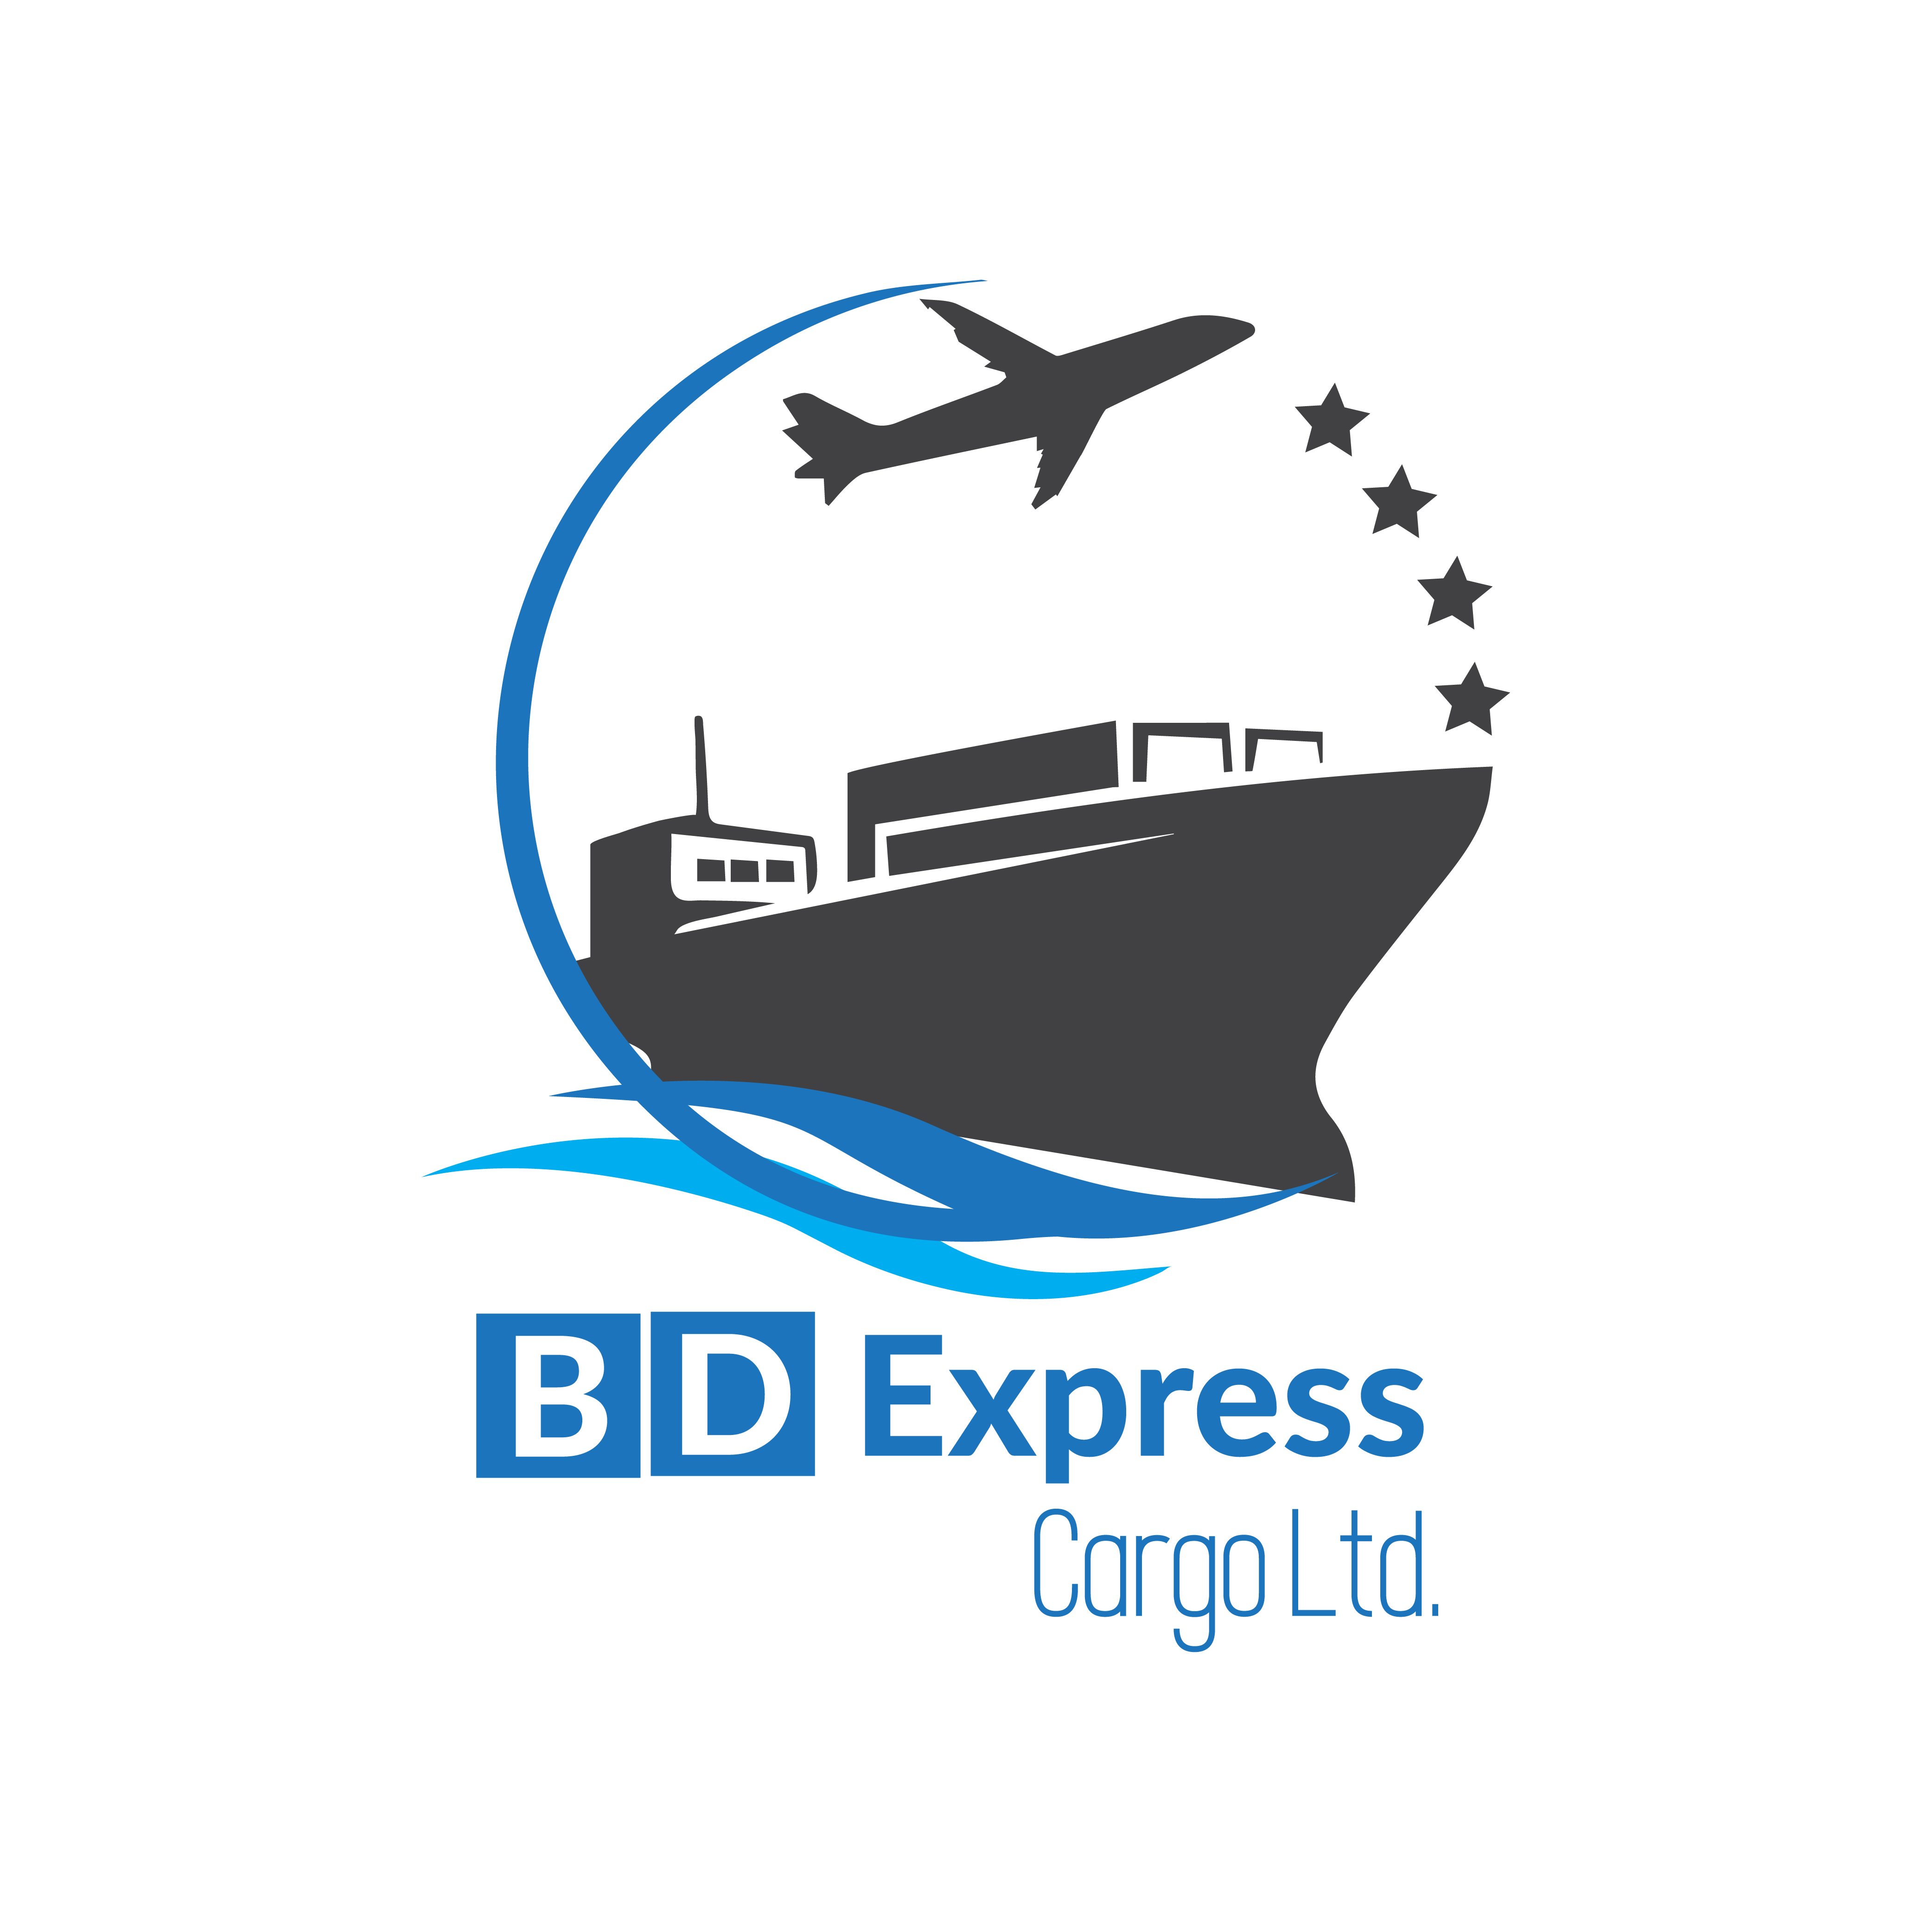 BD Express Cargo